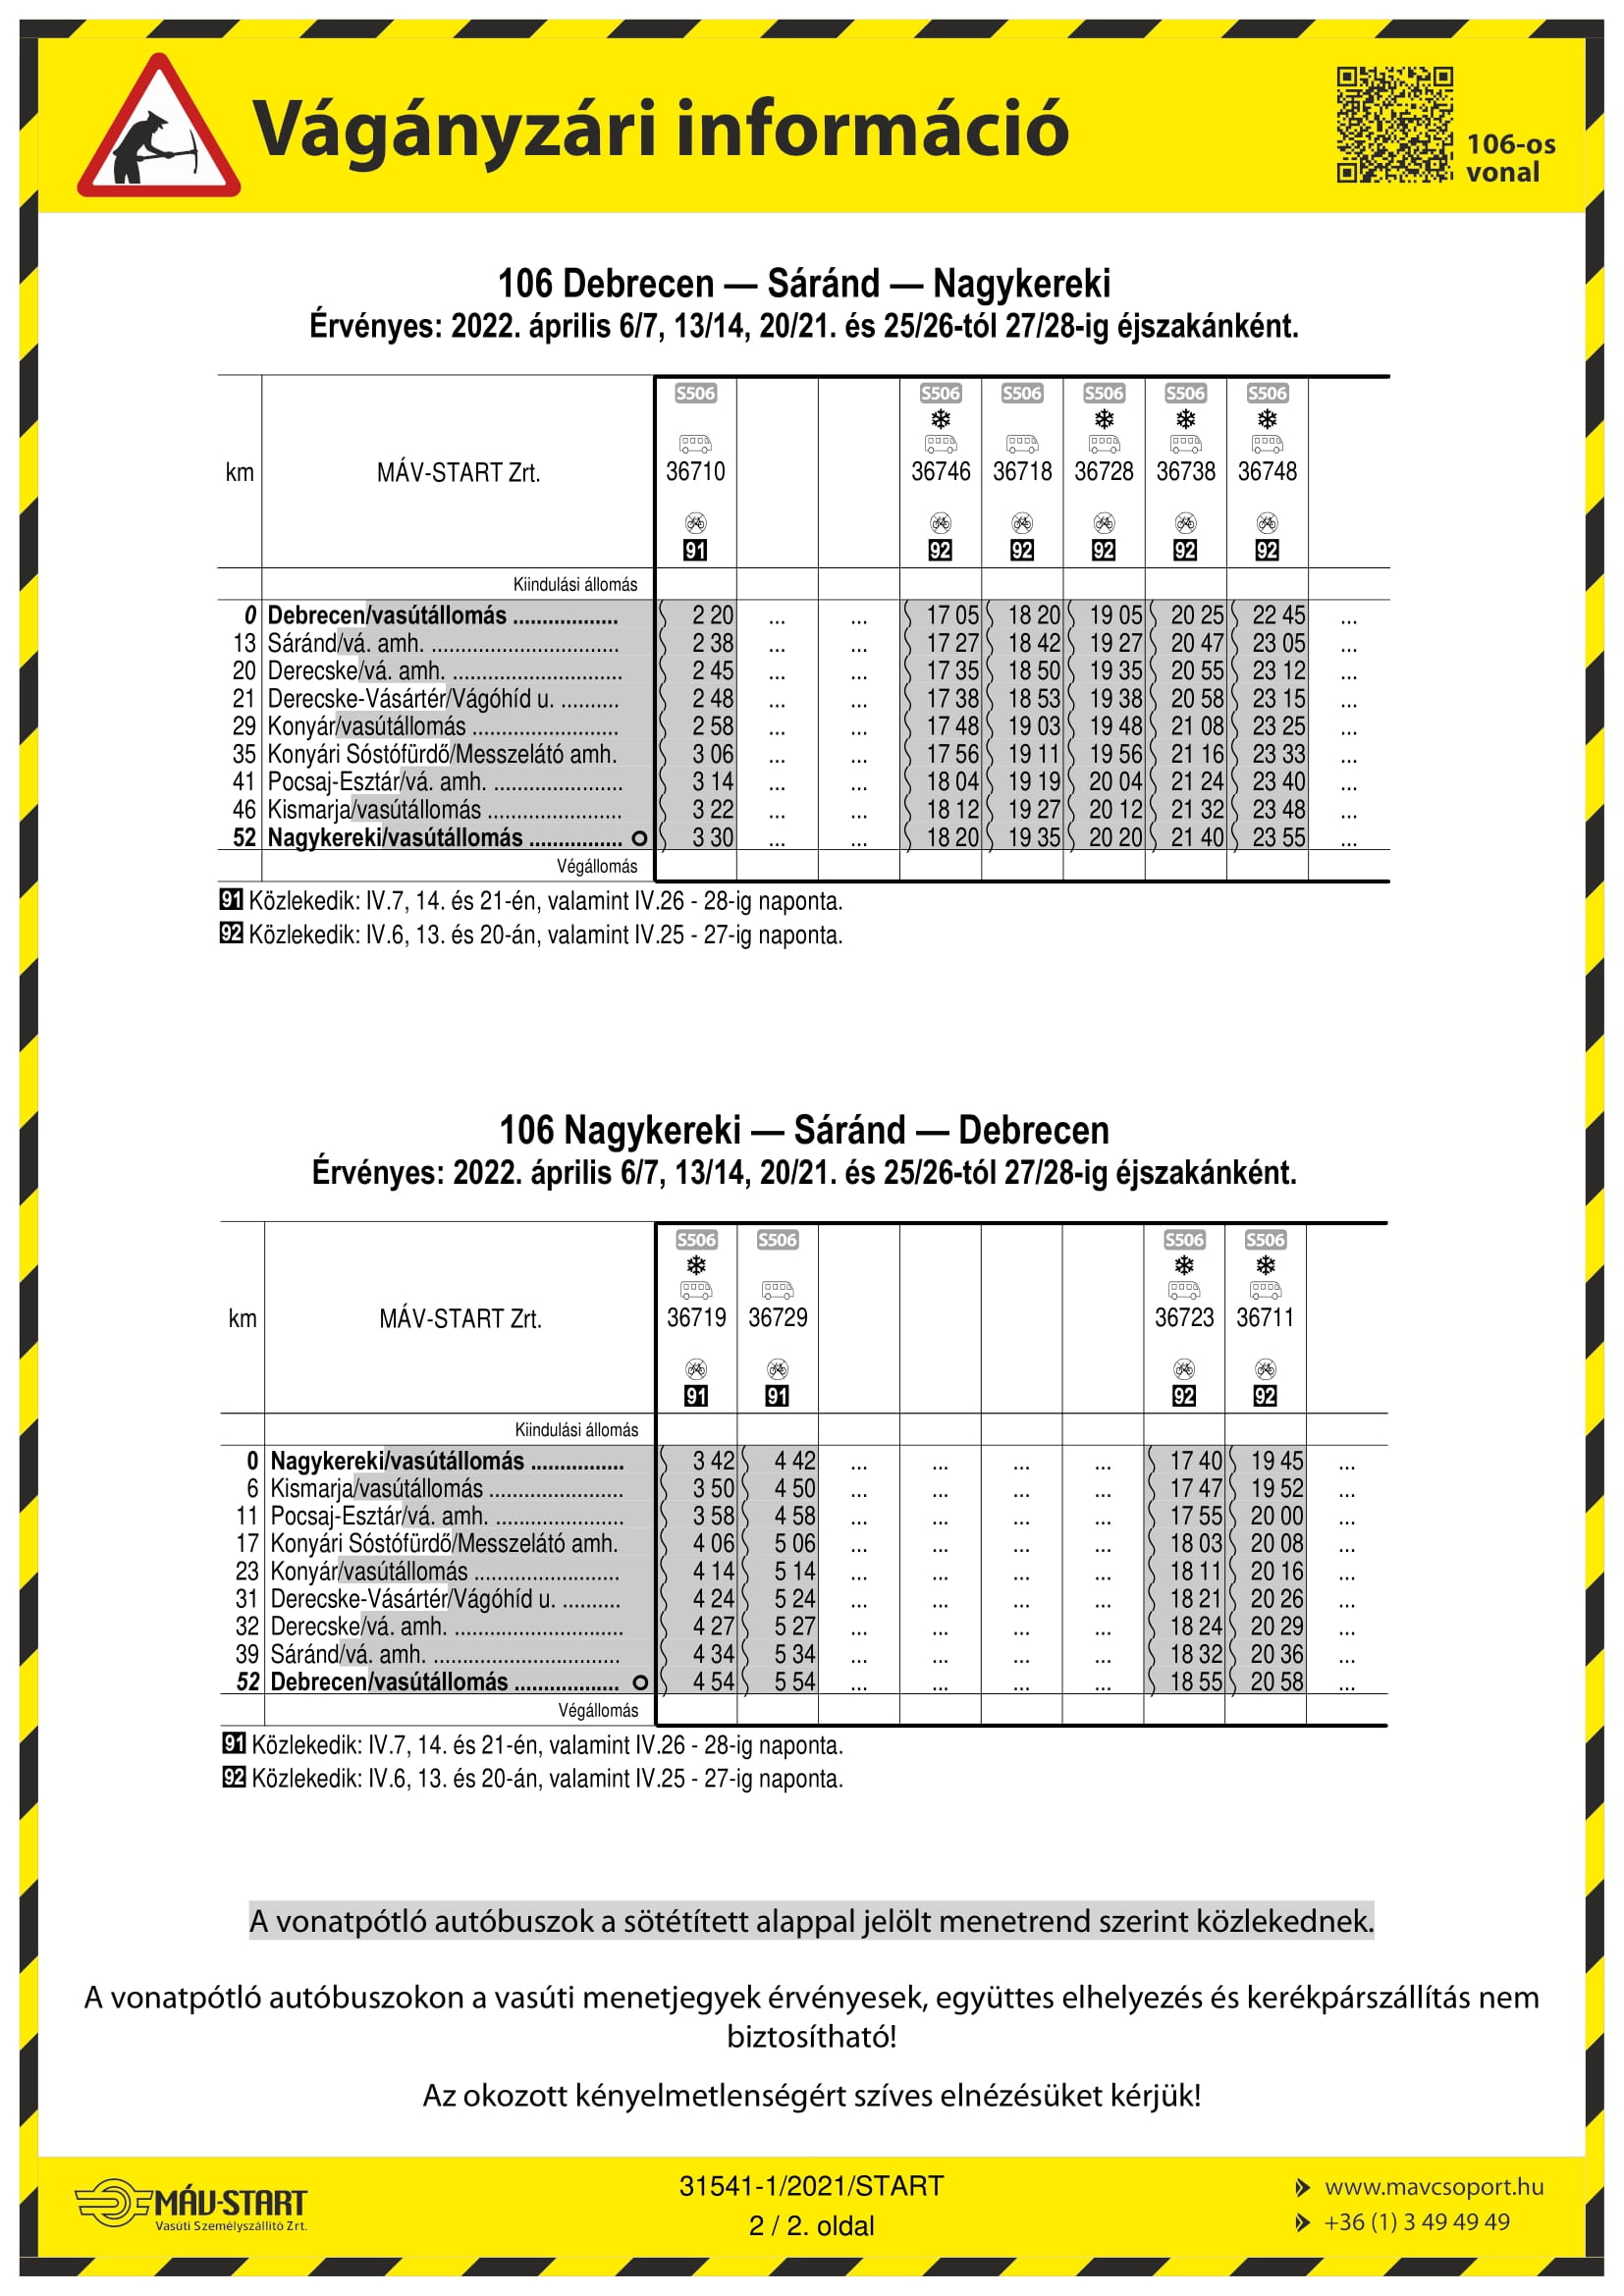 Vágányzári információ, Debrecen-Nagykereki állomások - április hónap